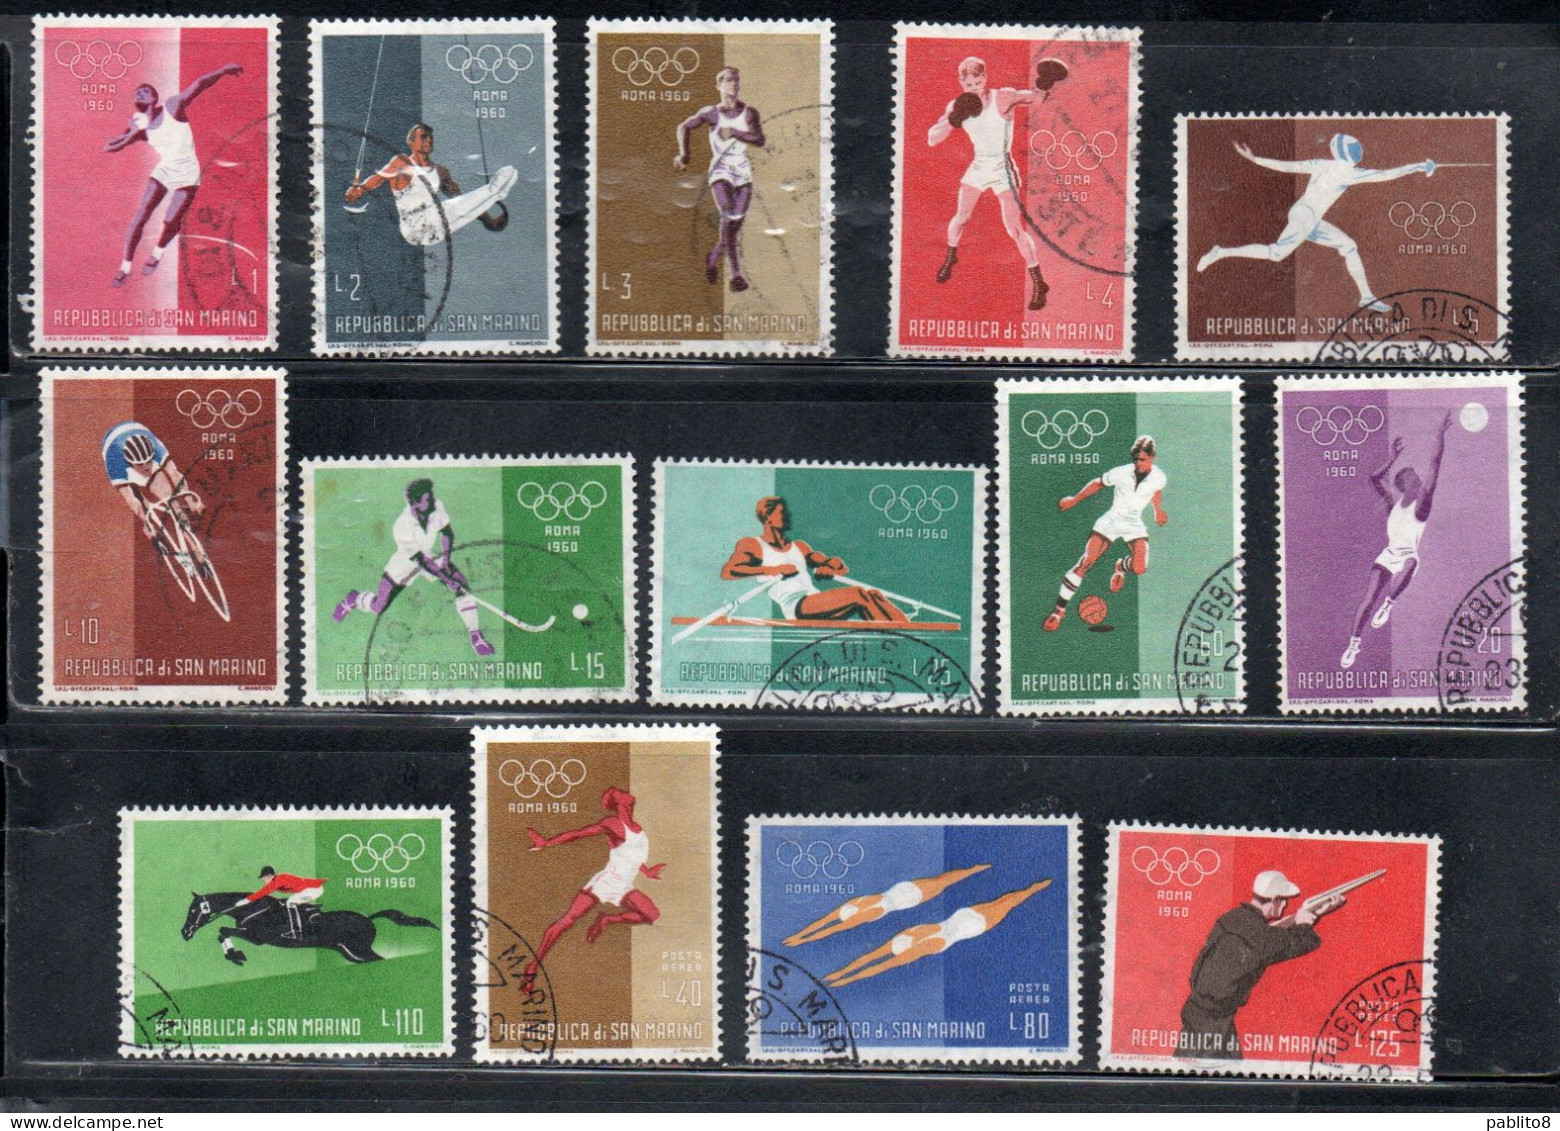 REPUBBLICA DI SAN MARINO 1960 GIOCHI OLIMPICI ROMA OLYMPIC GAMES ROME SERIE COMPLETA SET USATA USED OBLITERE' - Used Stamps